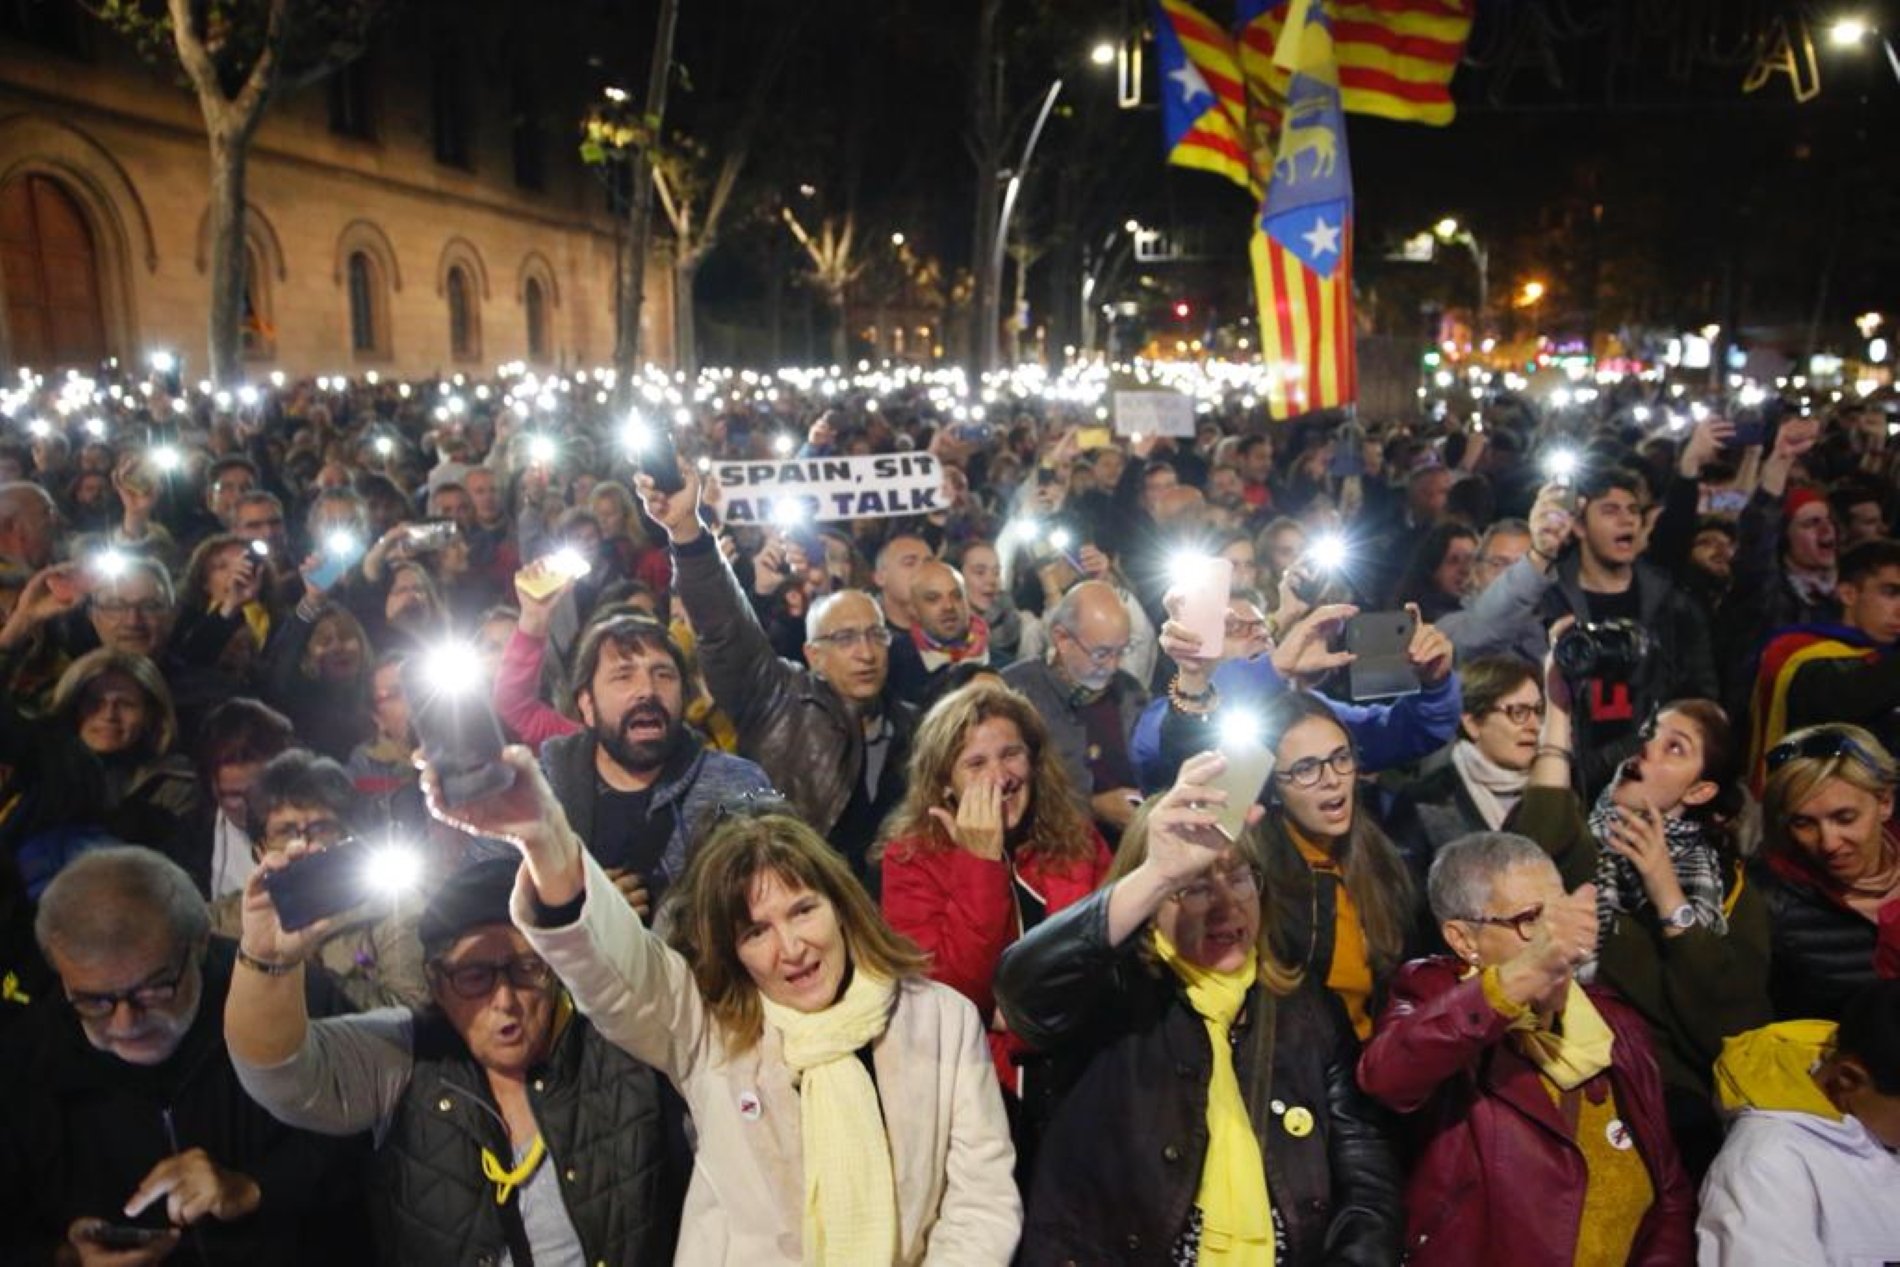 Así retrata Reuters la segunda acción del Tsunami, "el grupo secreto de protesta catalán"